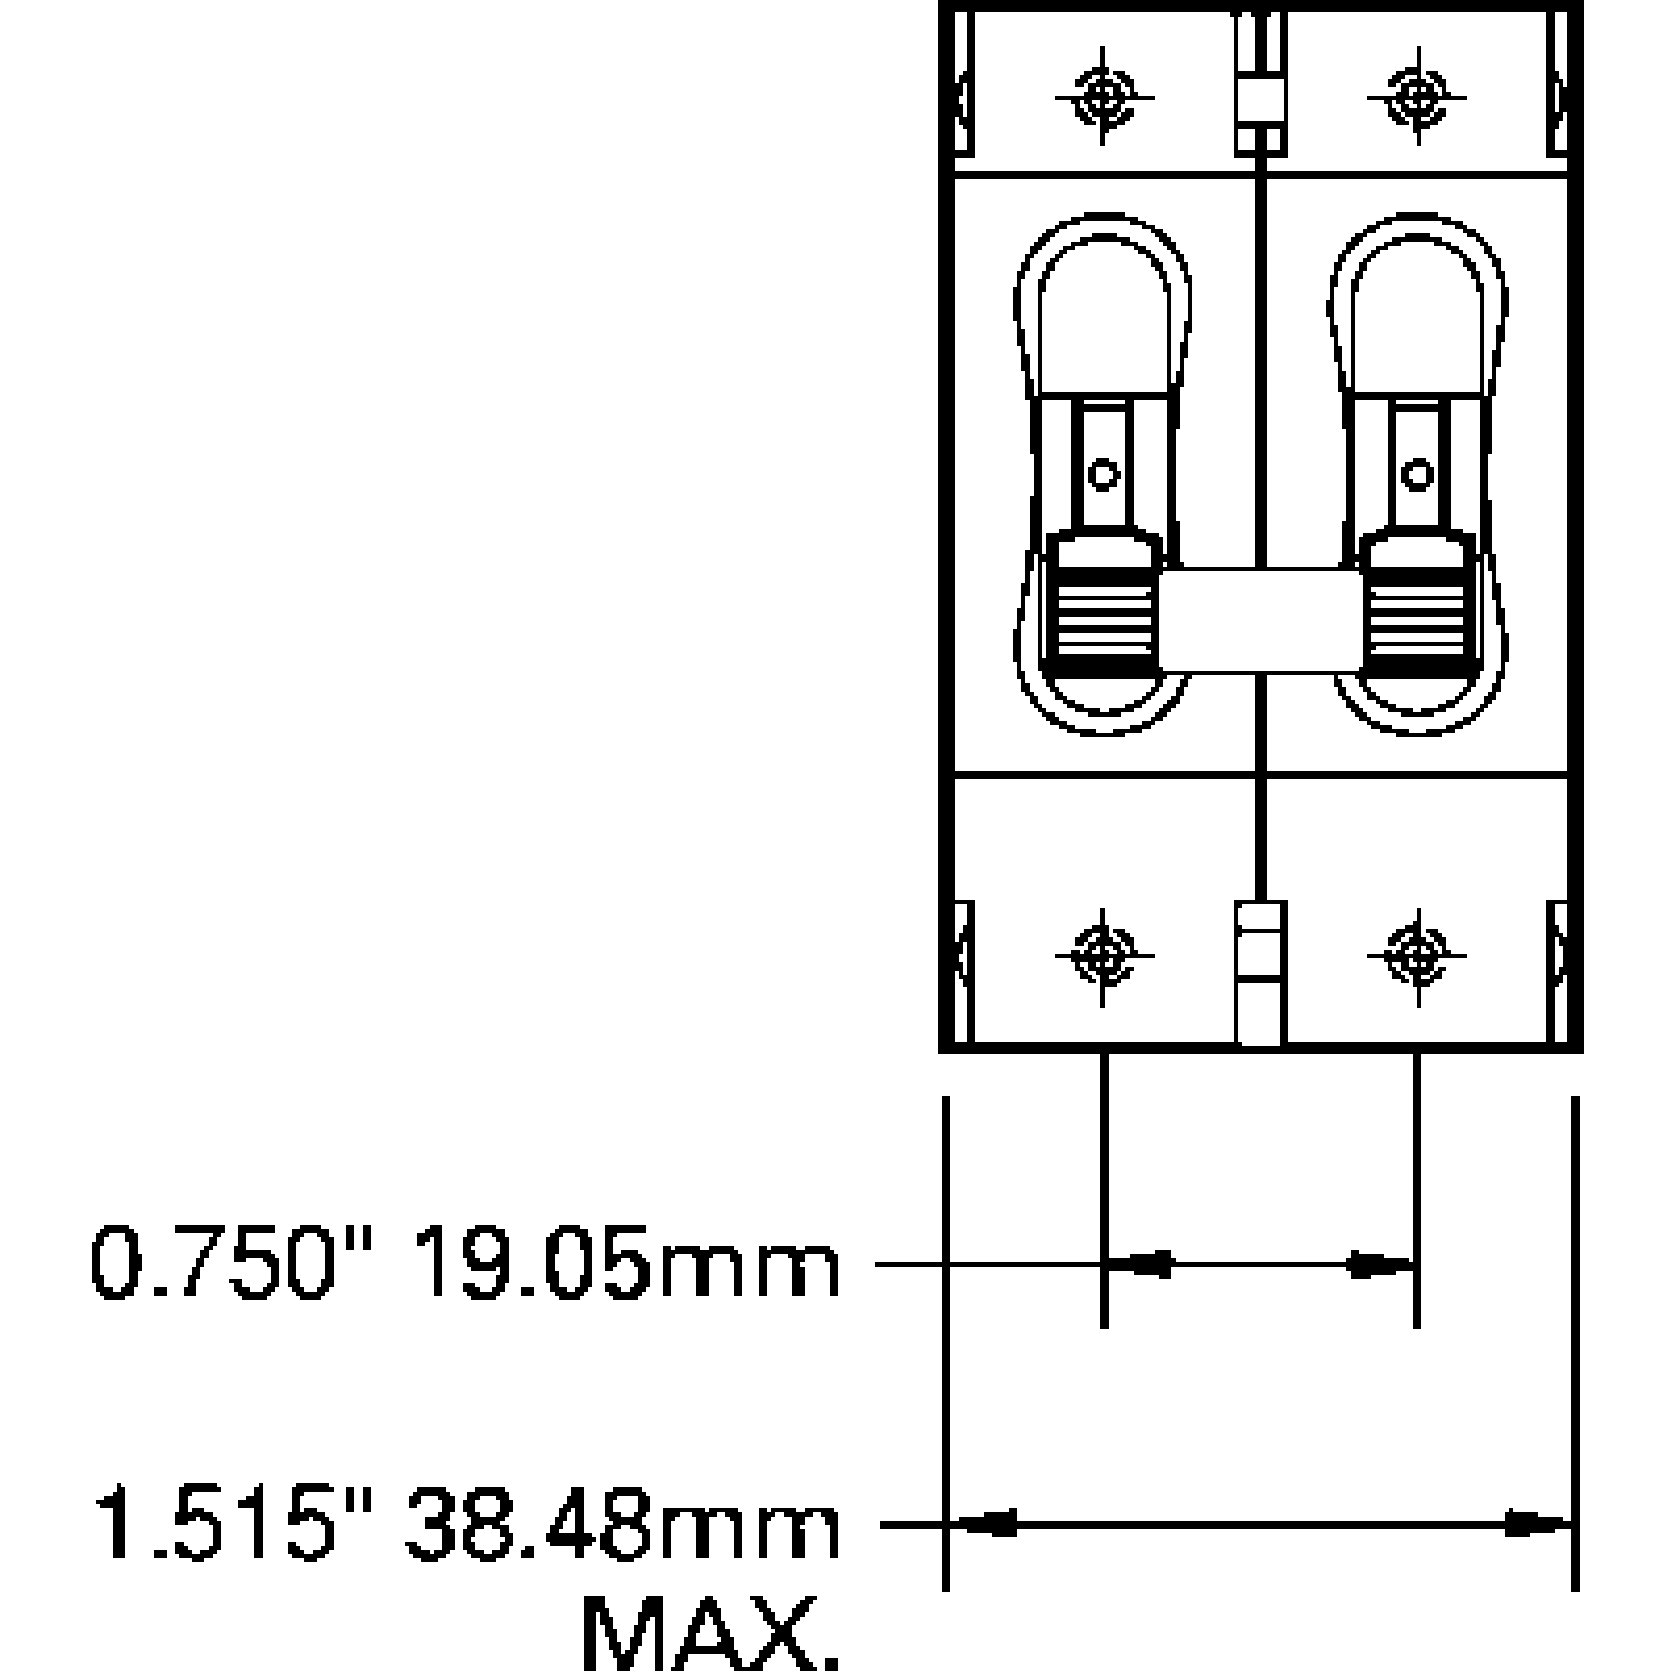 DC C-Series Double Pole Circuit Breakers